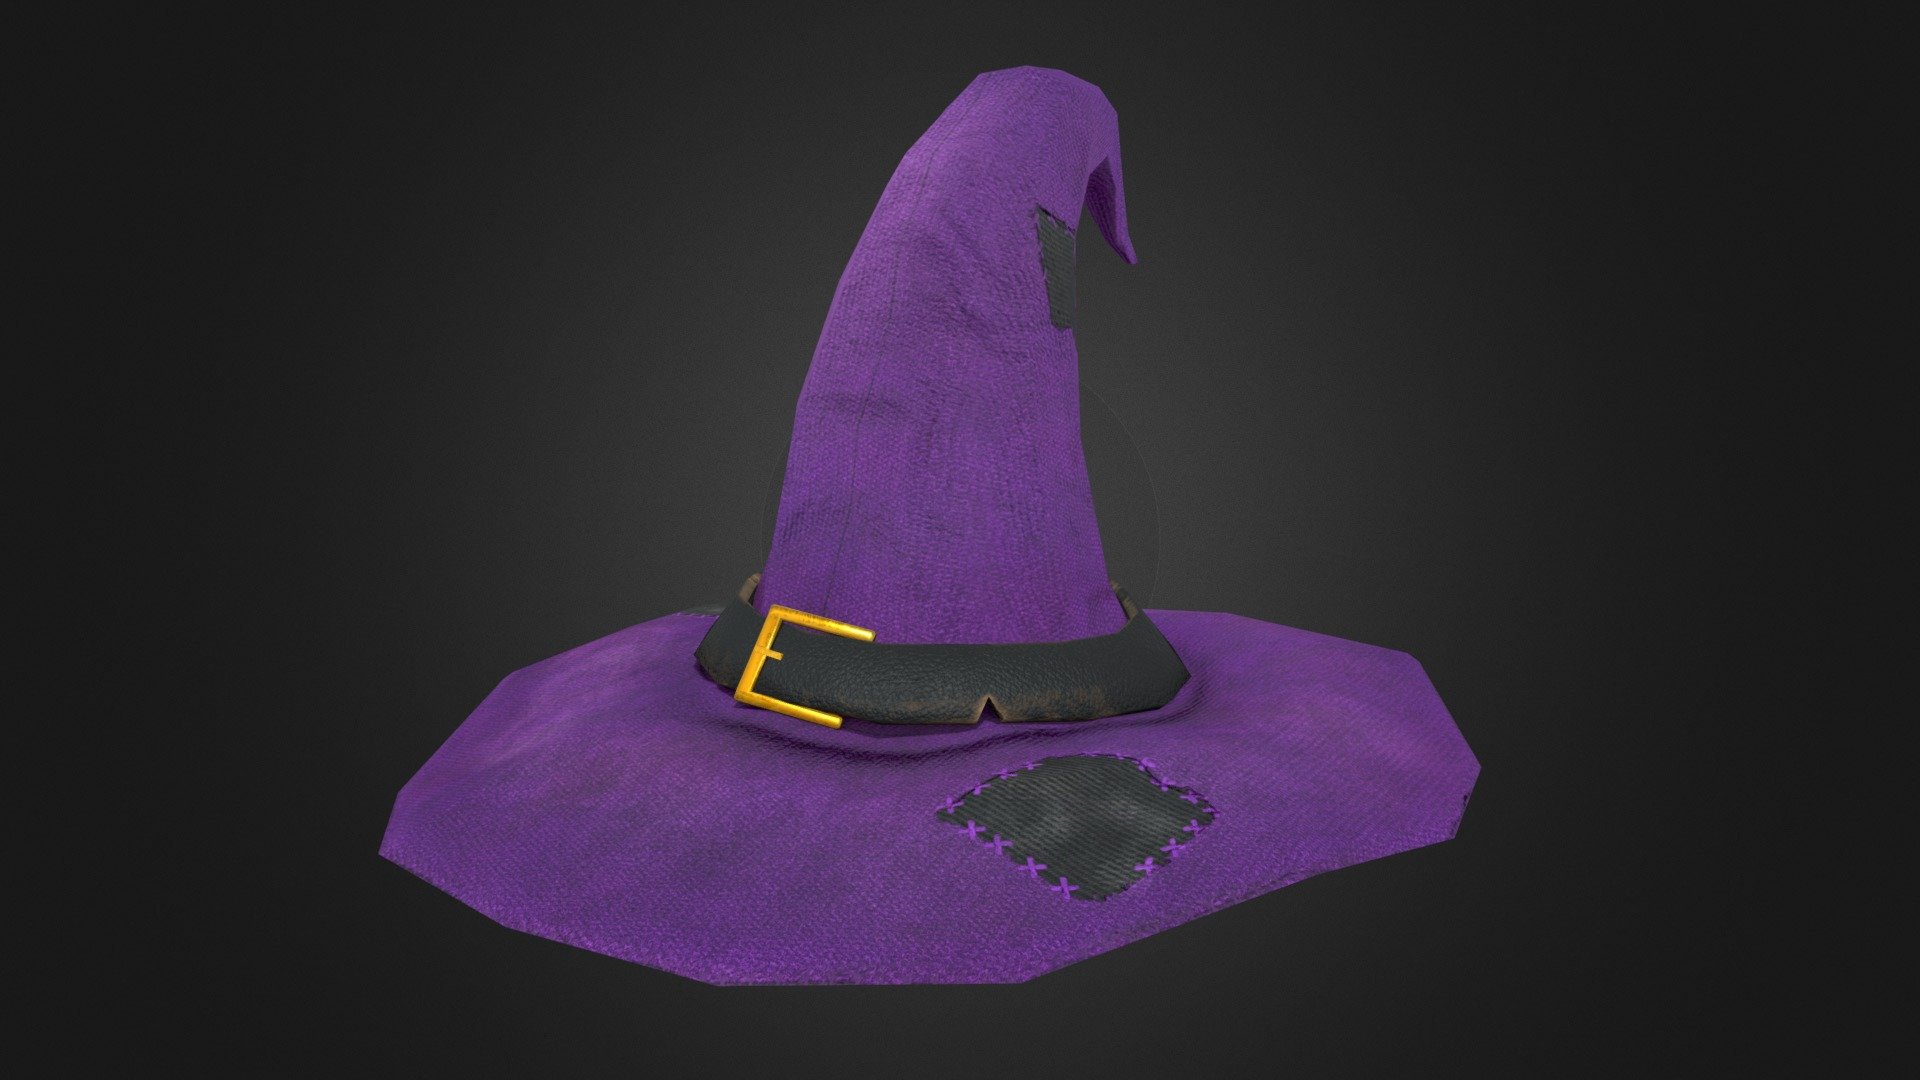 A mischevious wizard's hat! - Wizards Hat - 3D model by luckavrecek 3d model